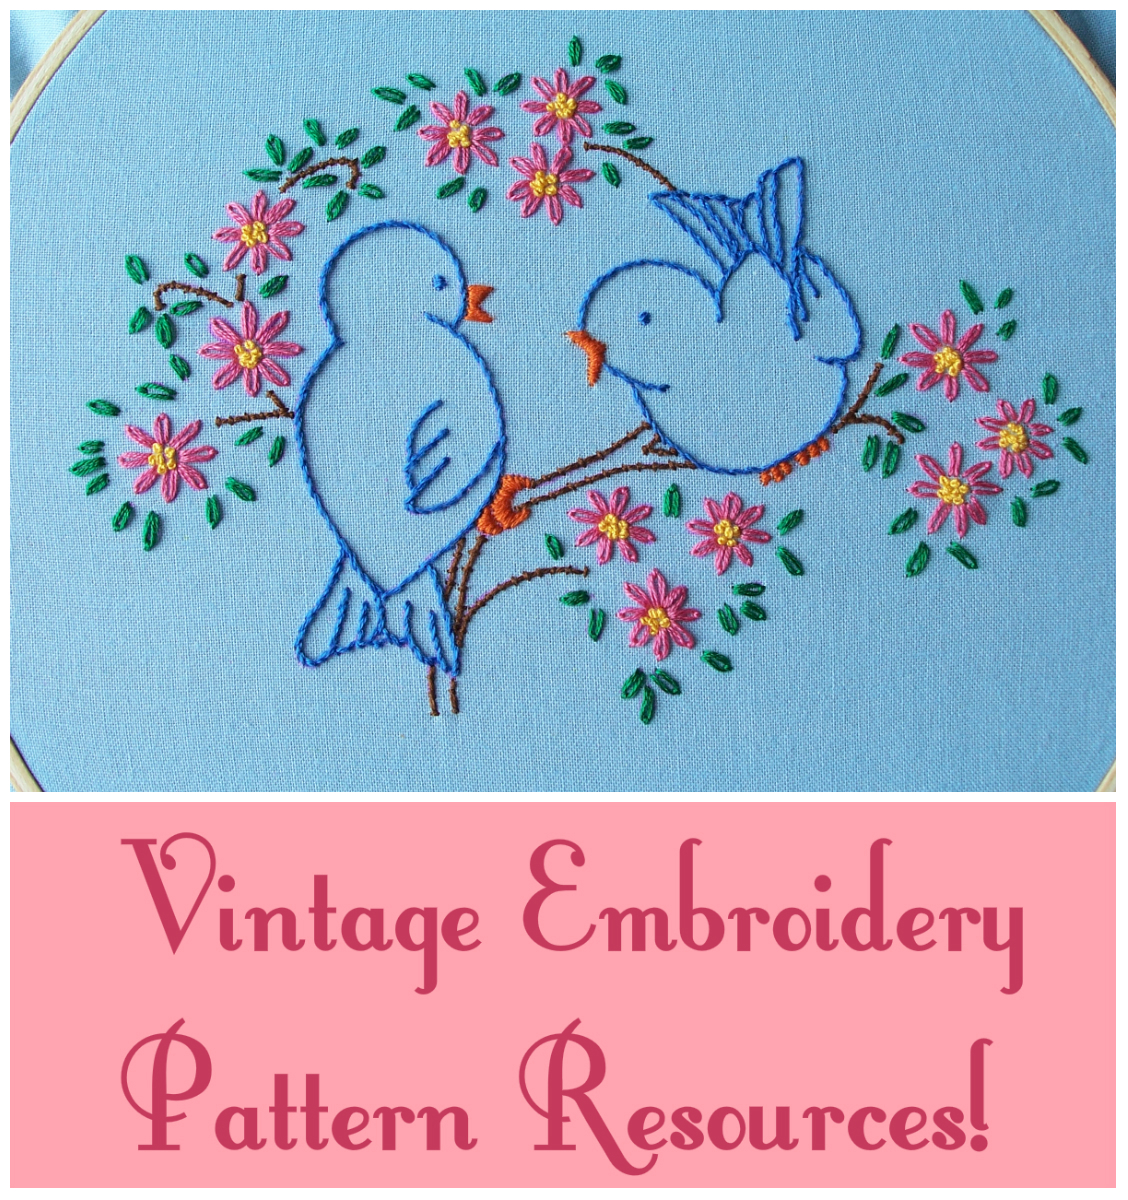 Vintage Embroidery Patterns Eglantine Stitchery Vintage Embroidery Pattern Resources